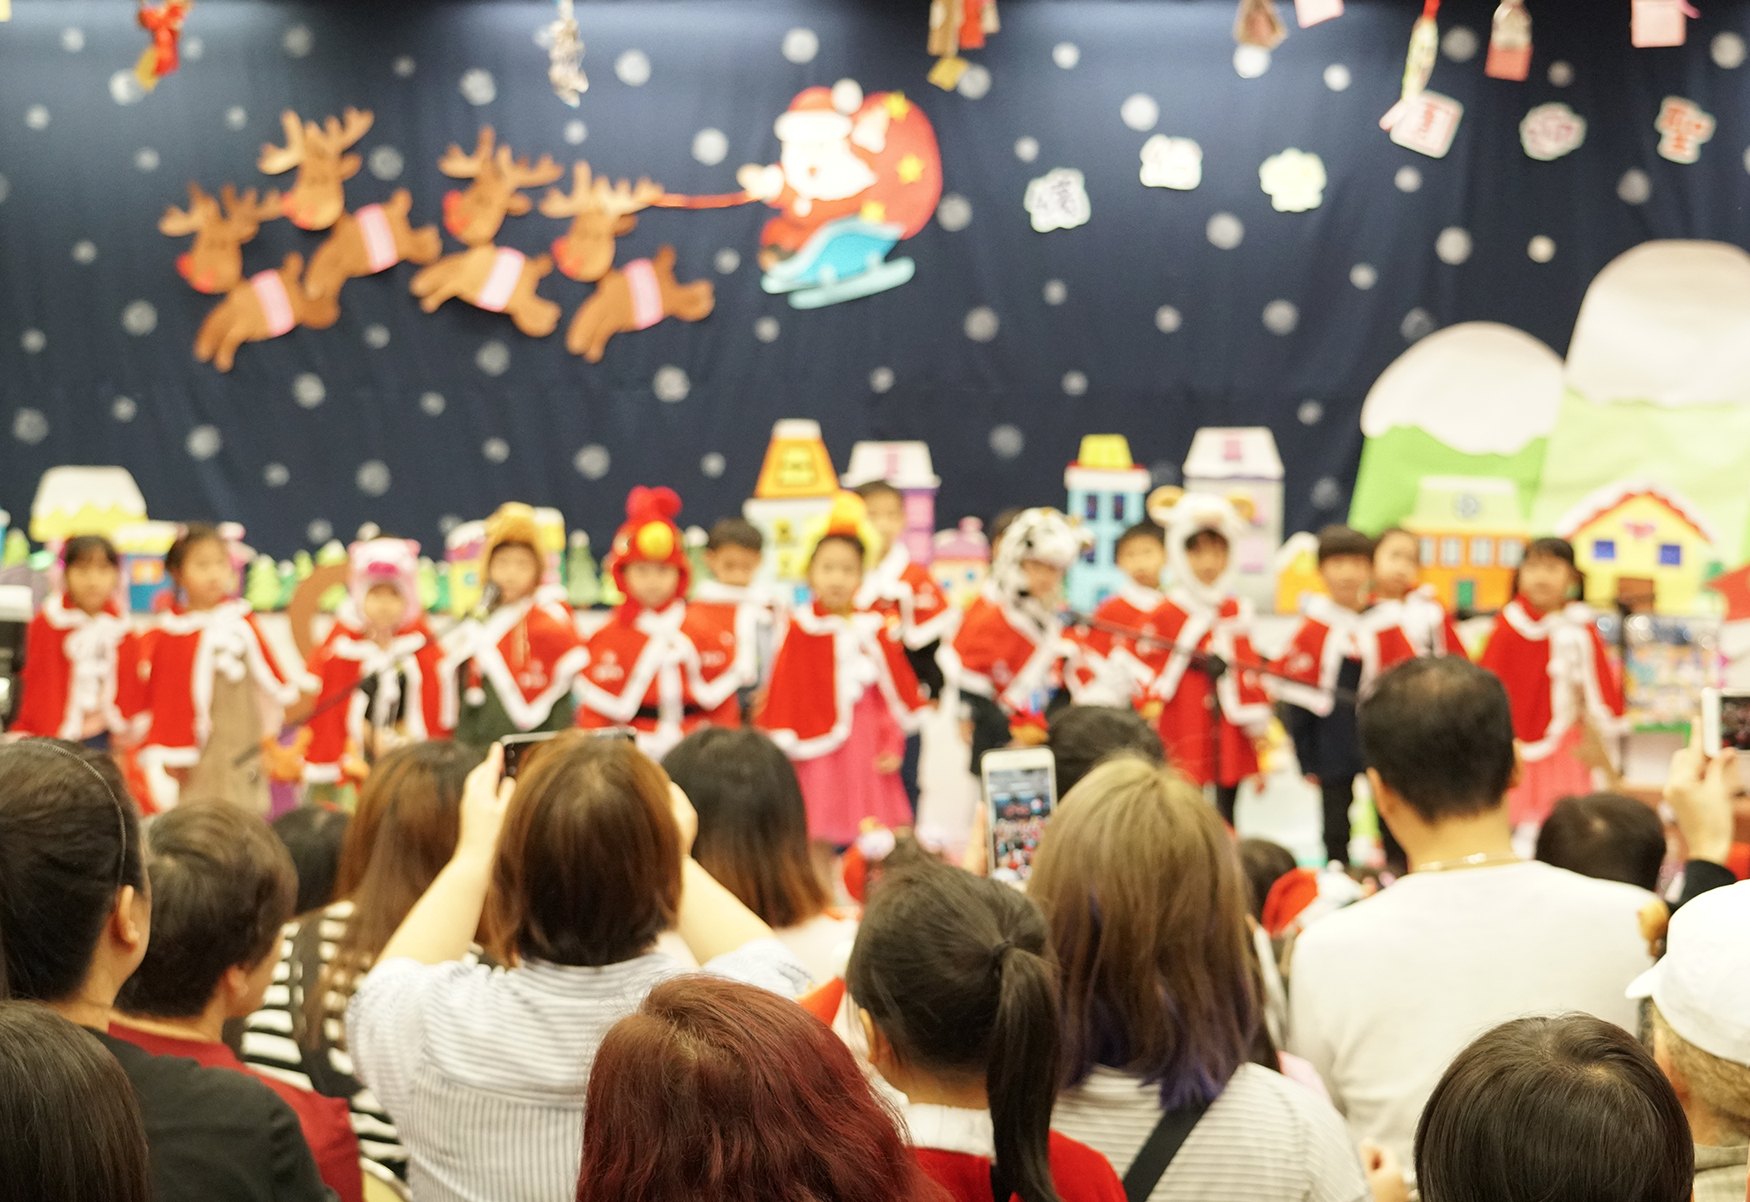 Recita Di Natale.Recita Natale Scuola Infanzia Come Prepararsi Alla Festa Piu Bella Dell Anno